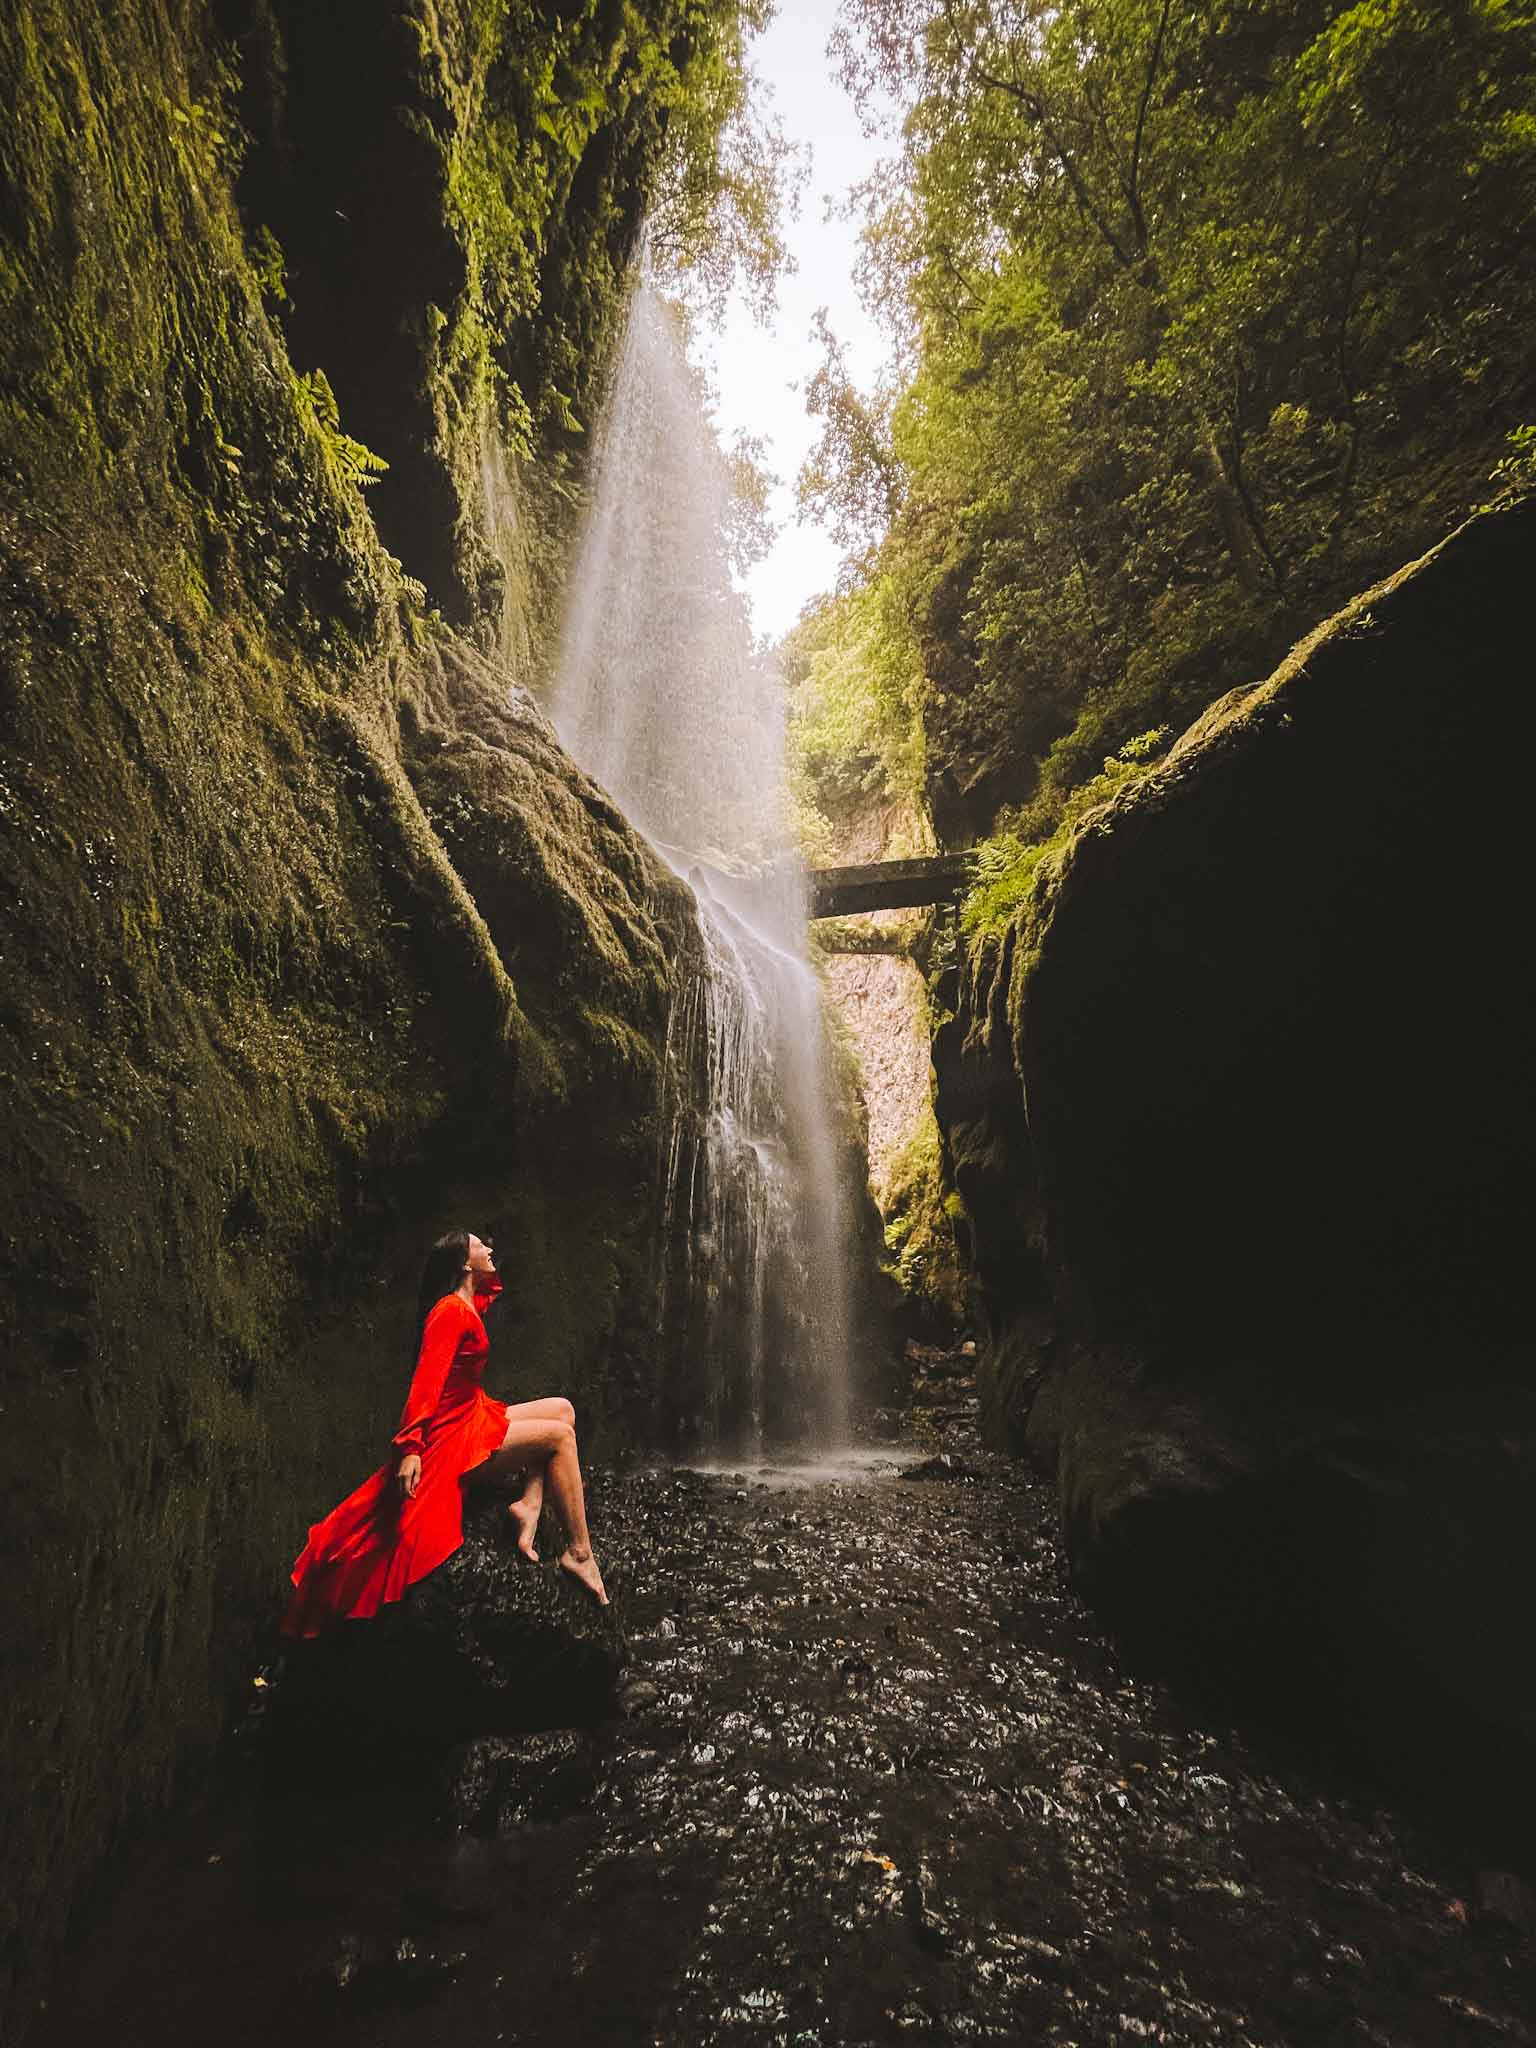 Best Instagram spots in La Palma Canary Islands - Cascada De Los Tilos waterfall